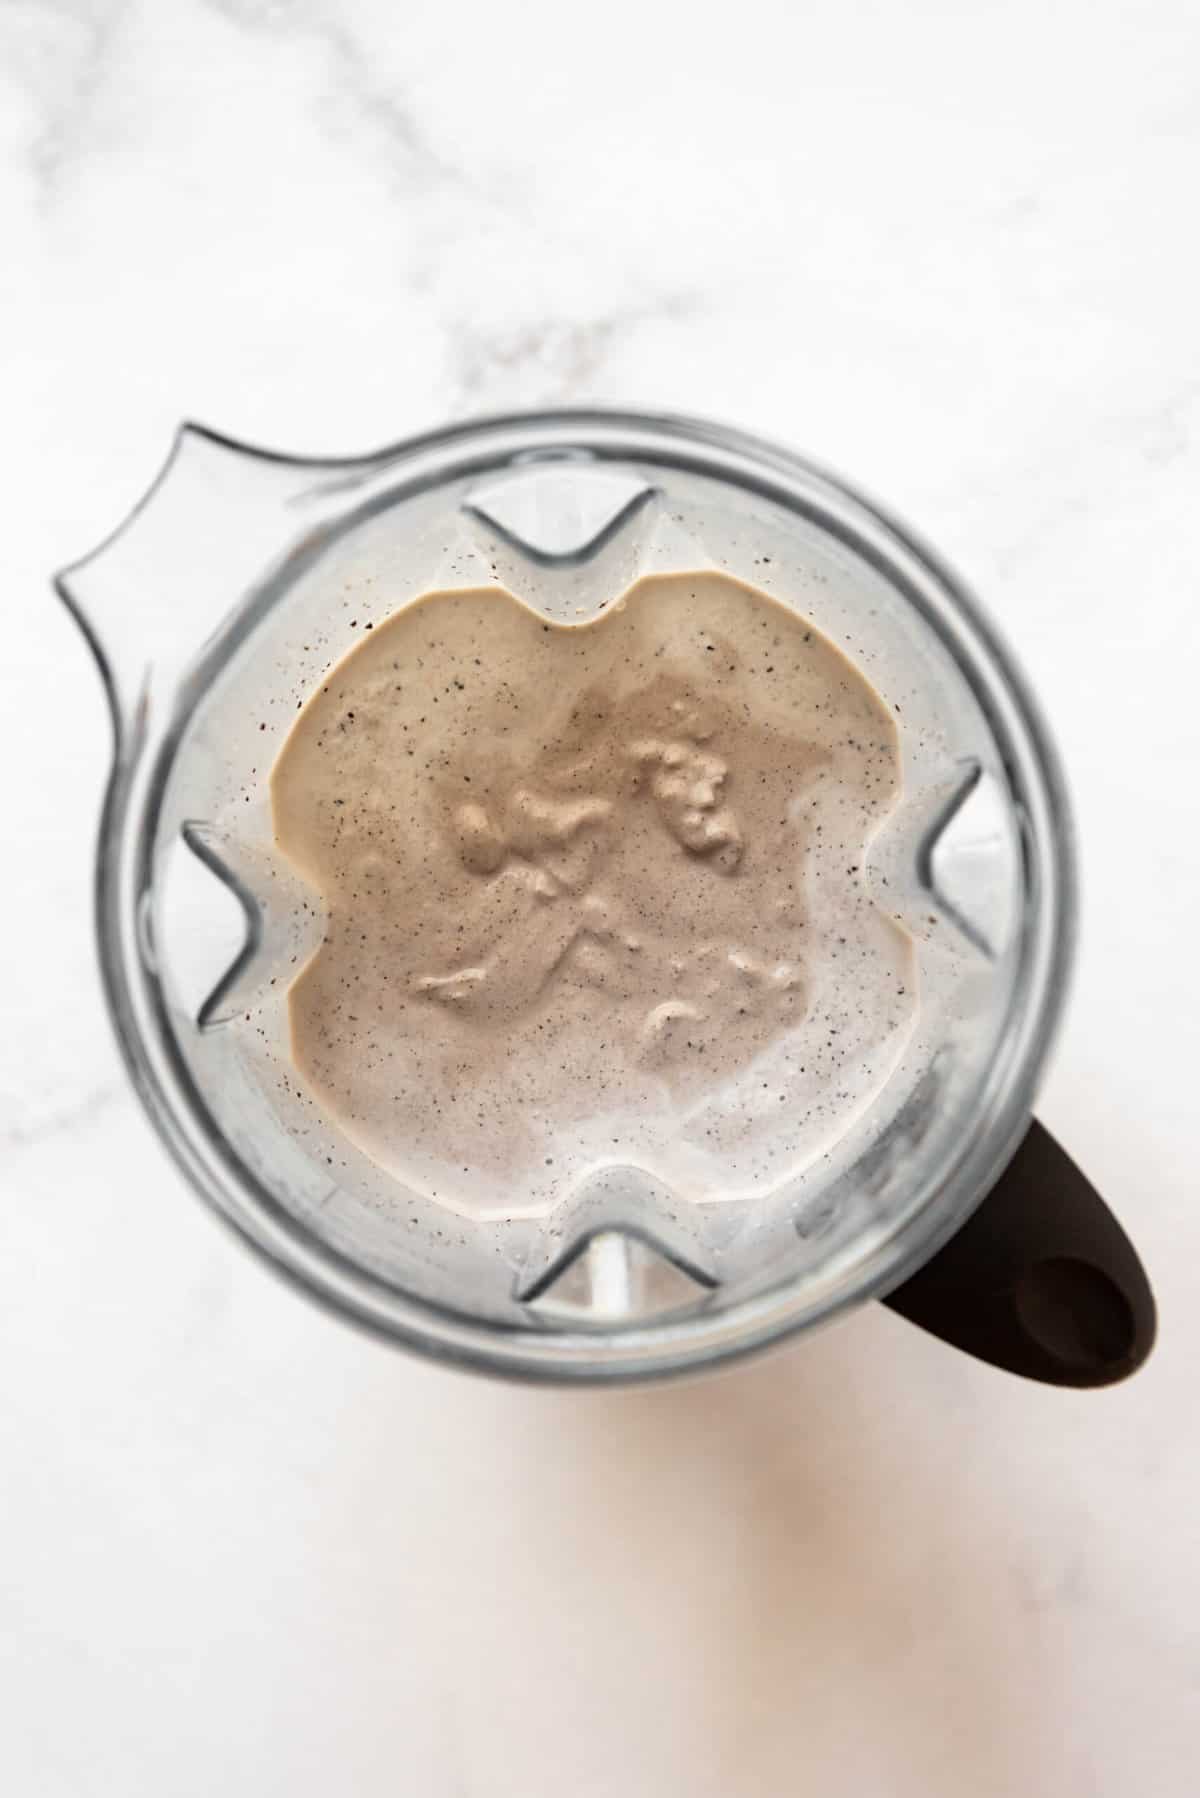 A blended Oreo milkshake in a Vitamix blender pitcher.